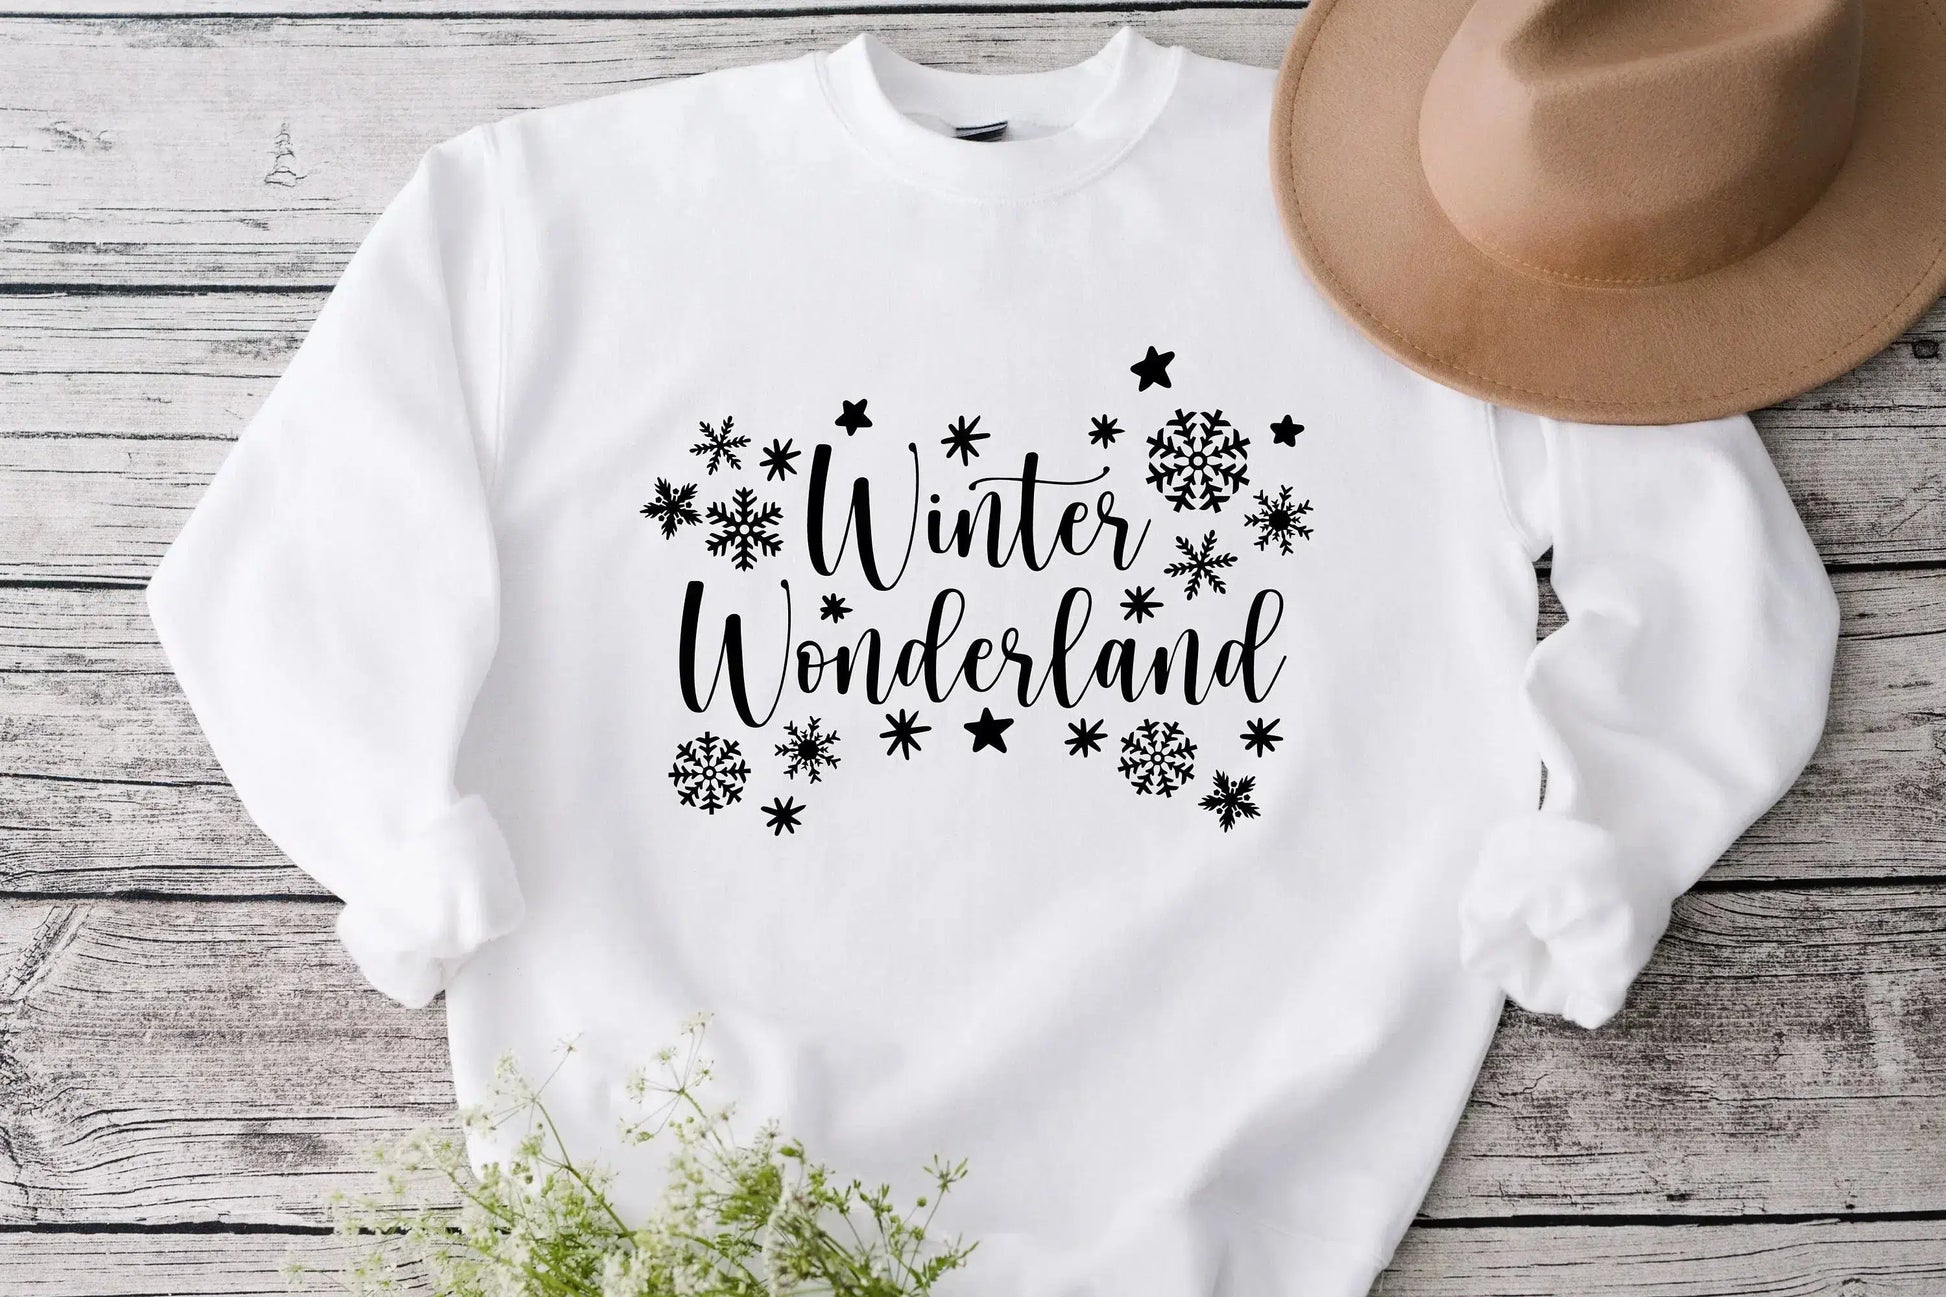 Winter Wonderland, Christmas T-shirt for Women, Funny Winter Shirt, Christmas Tee, Holiday Shirt, Women's Christmas, Holiday Shirt HMDesignStudioUS